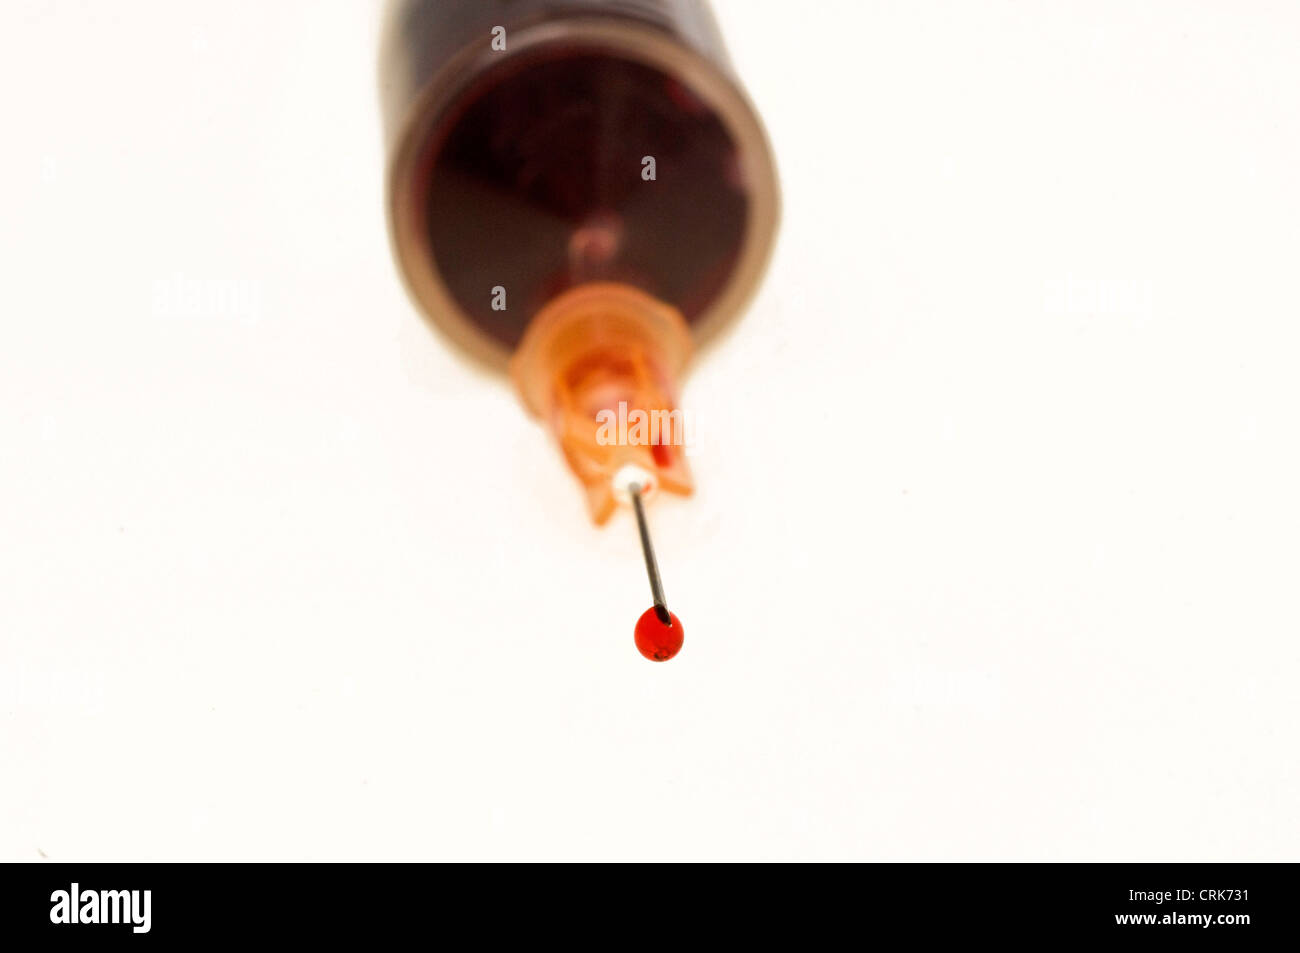 Vista di un ago fissato ad una siringa, la punta dell'ago contiene una gocciolina di liquido. Foto Stock